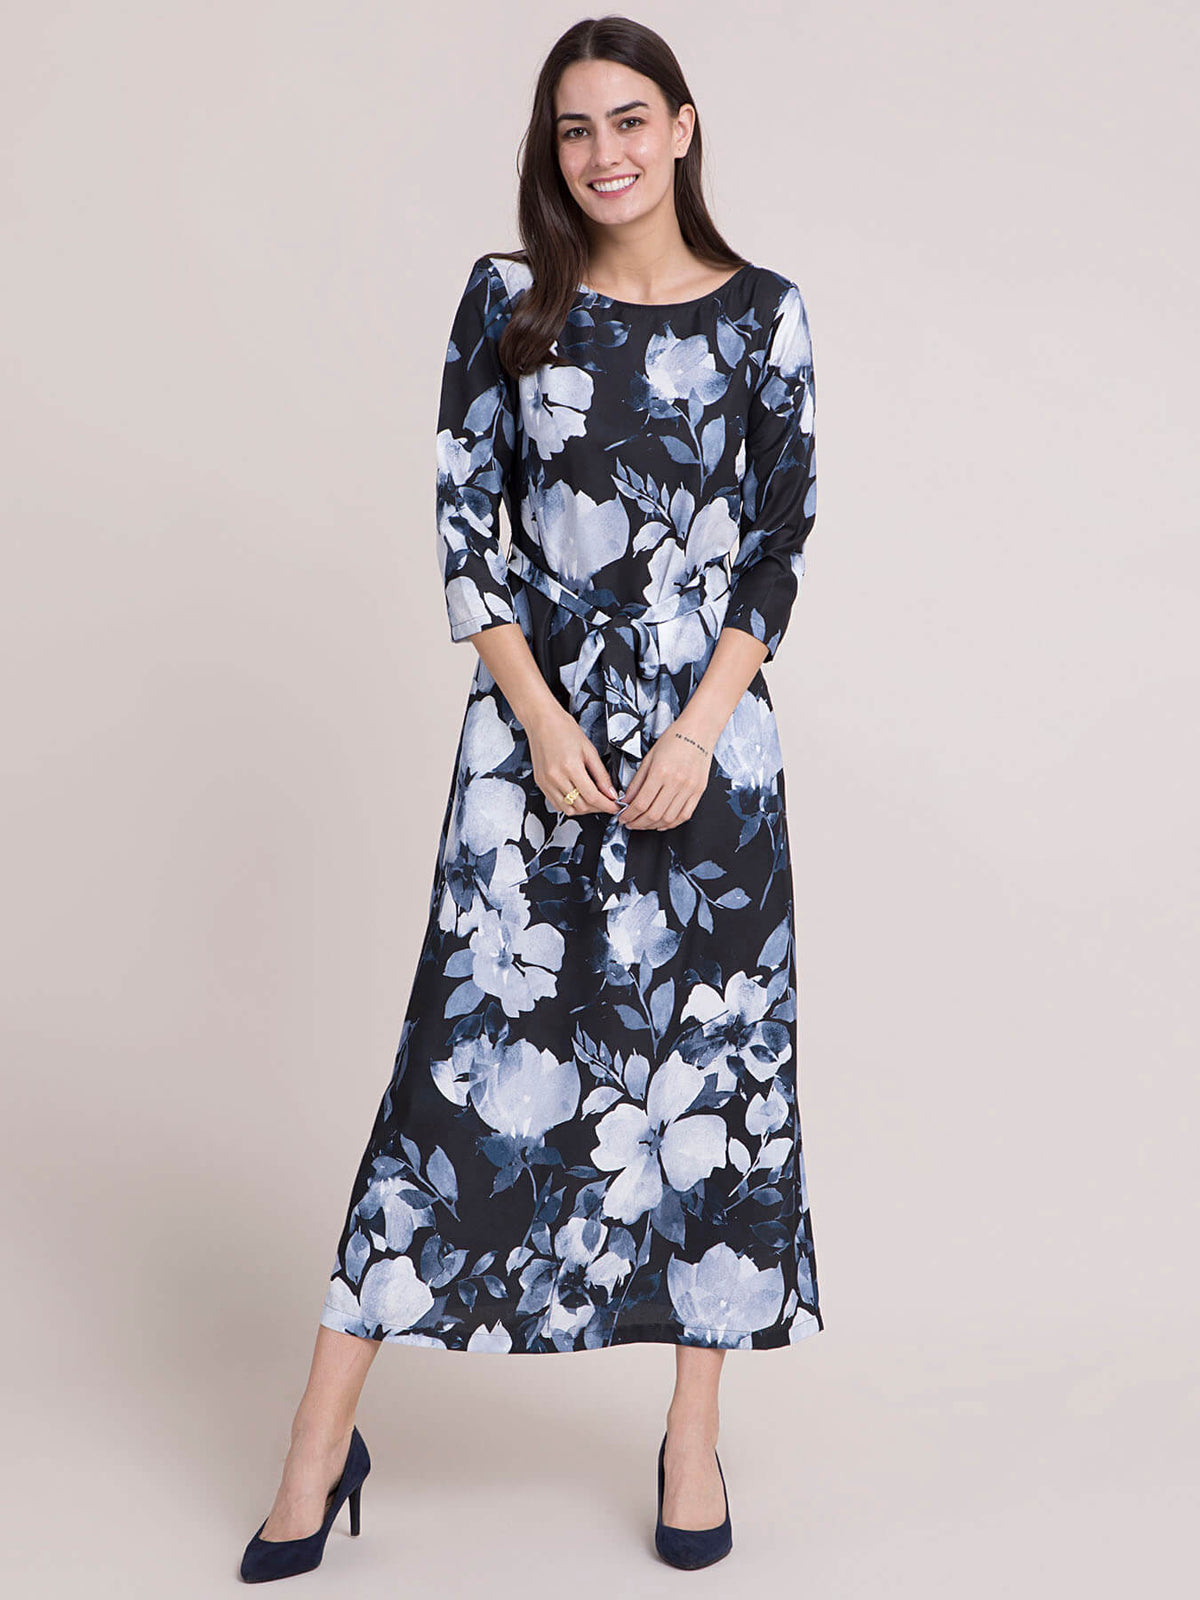 Boat Neck Floral A Line Dress - Black and Navy Blue| Formal Dresses